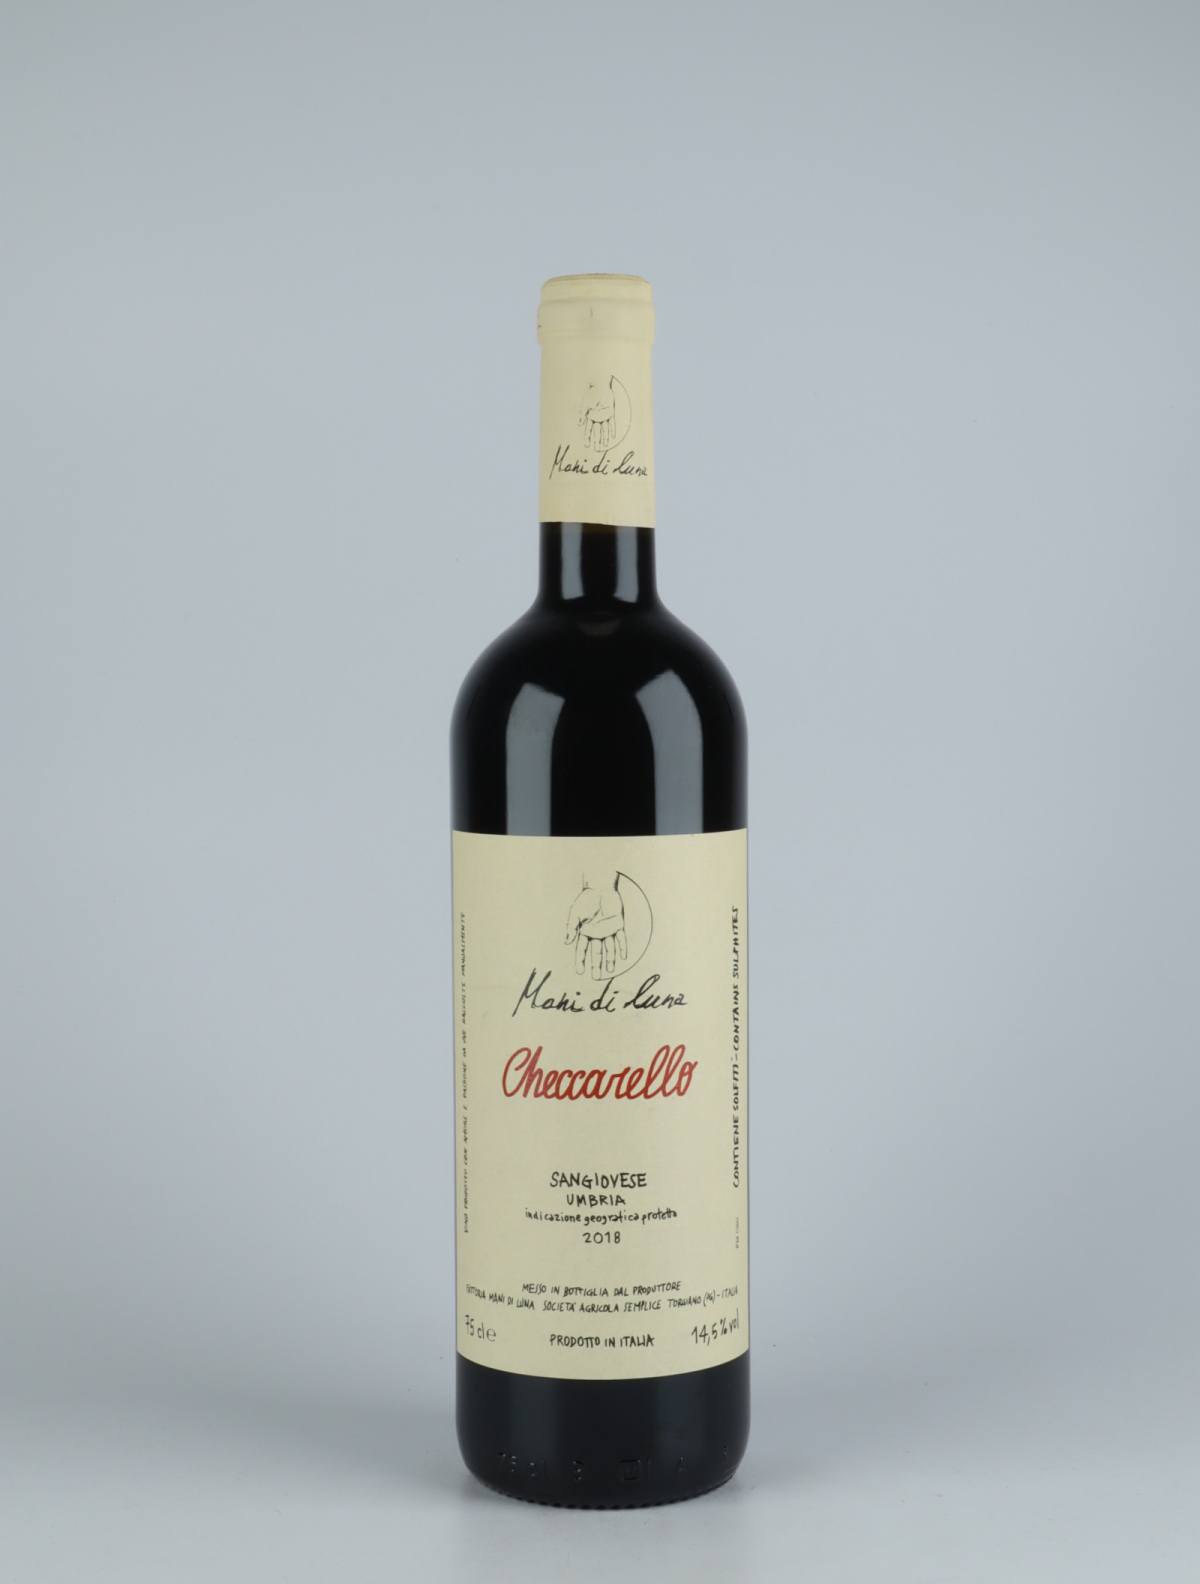 A bottle 2018 Checcarello Red wine from Mani di Luna, Umbria in Italy